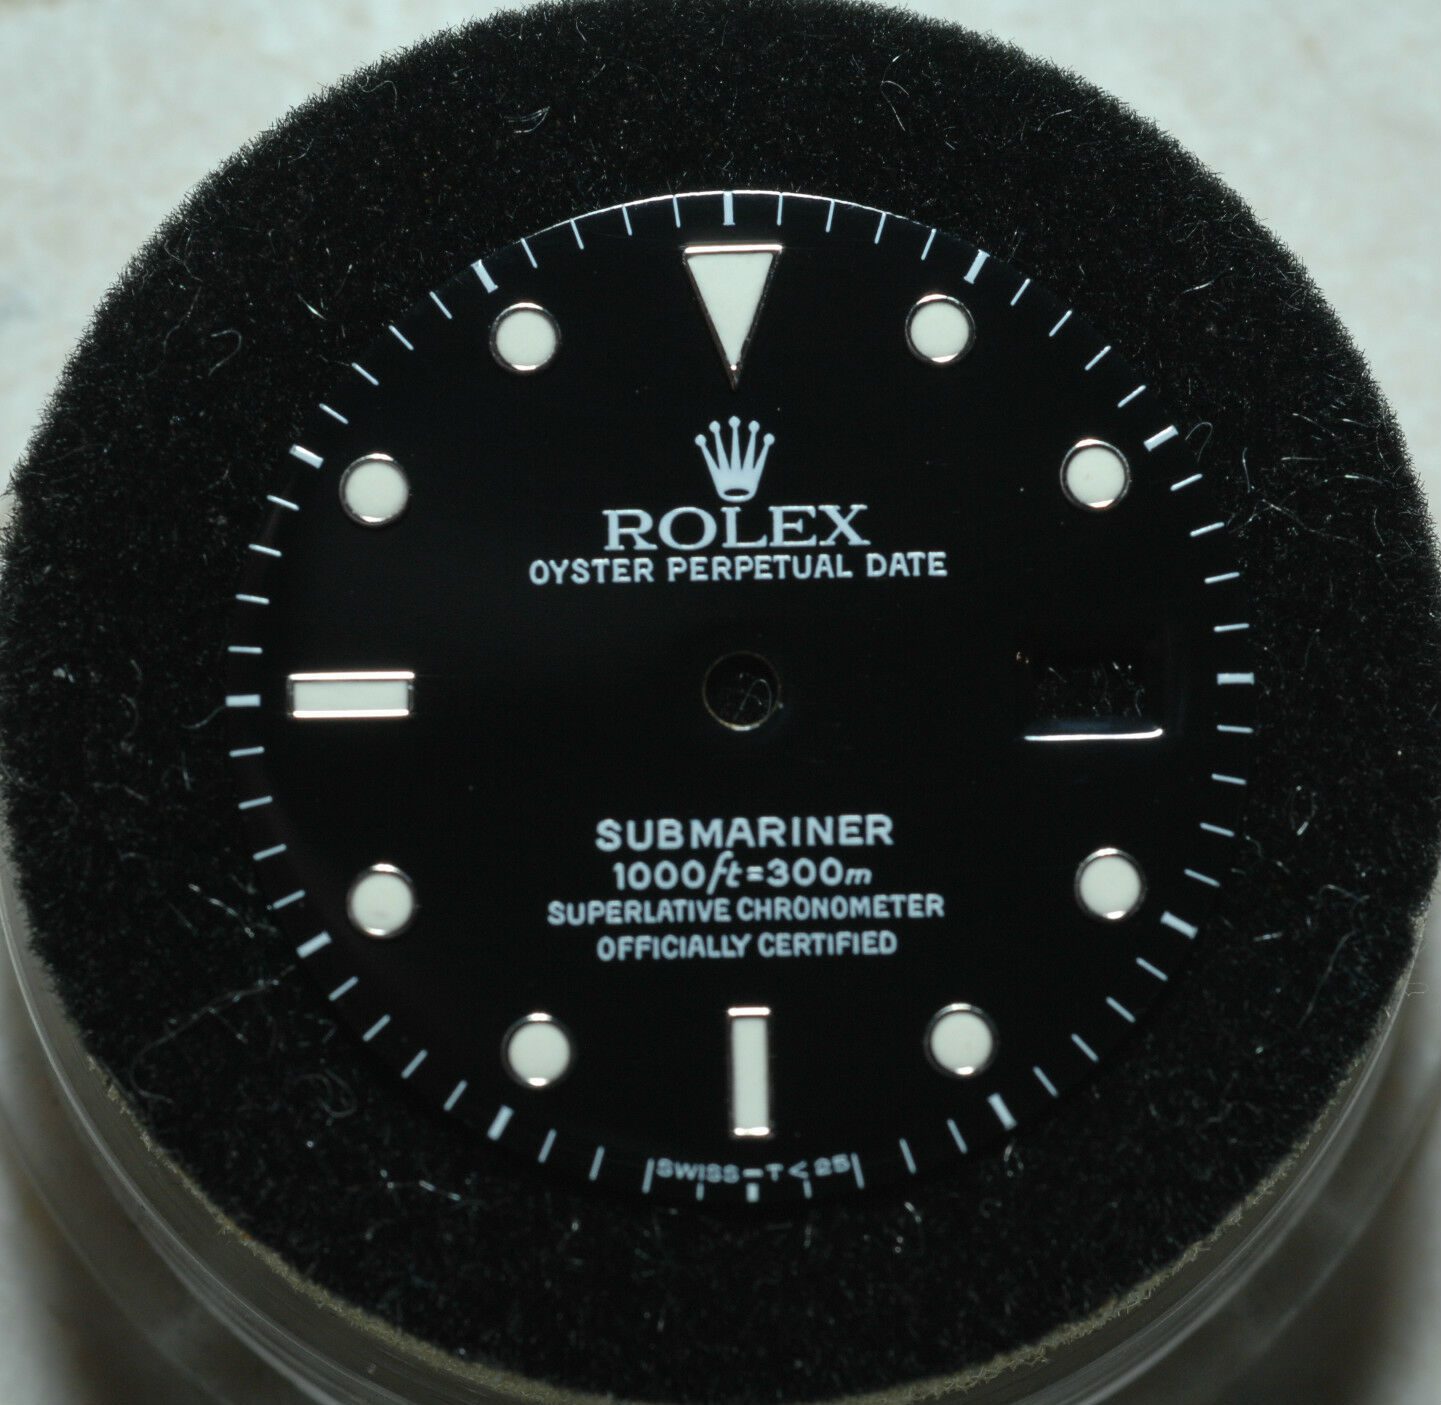 Rolex Submariner 16610 Black Dial Watch